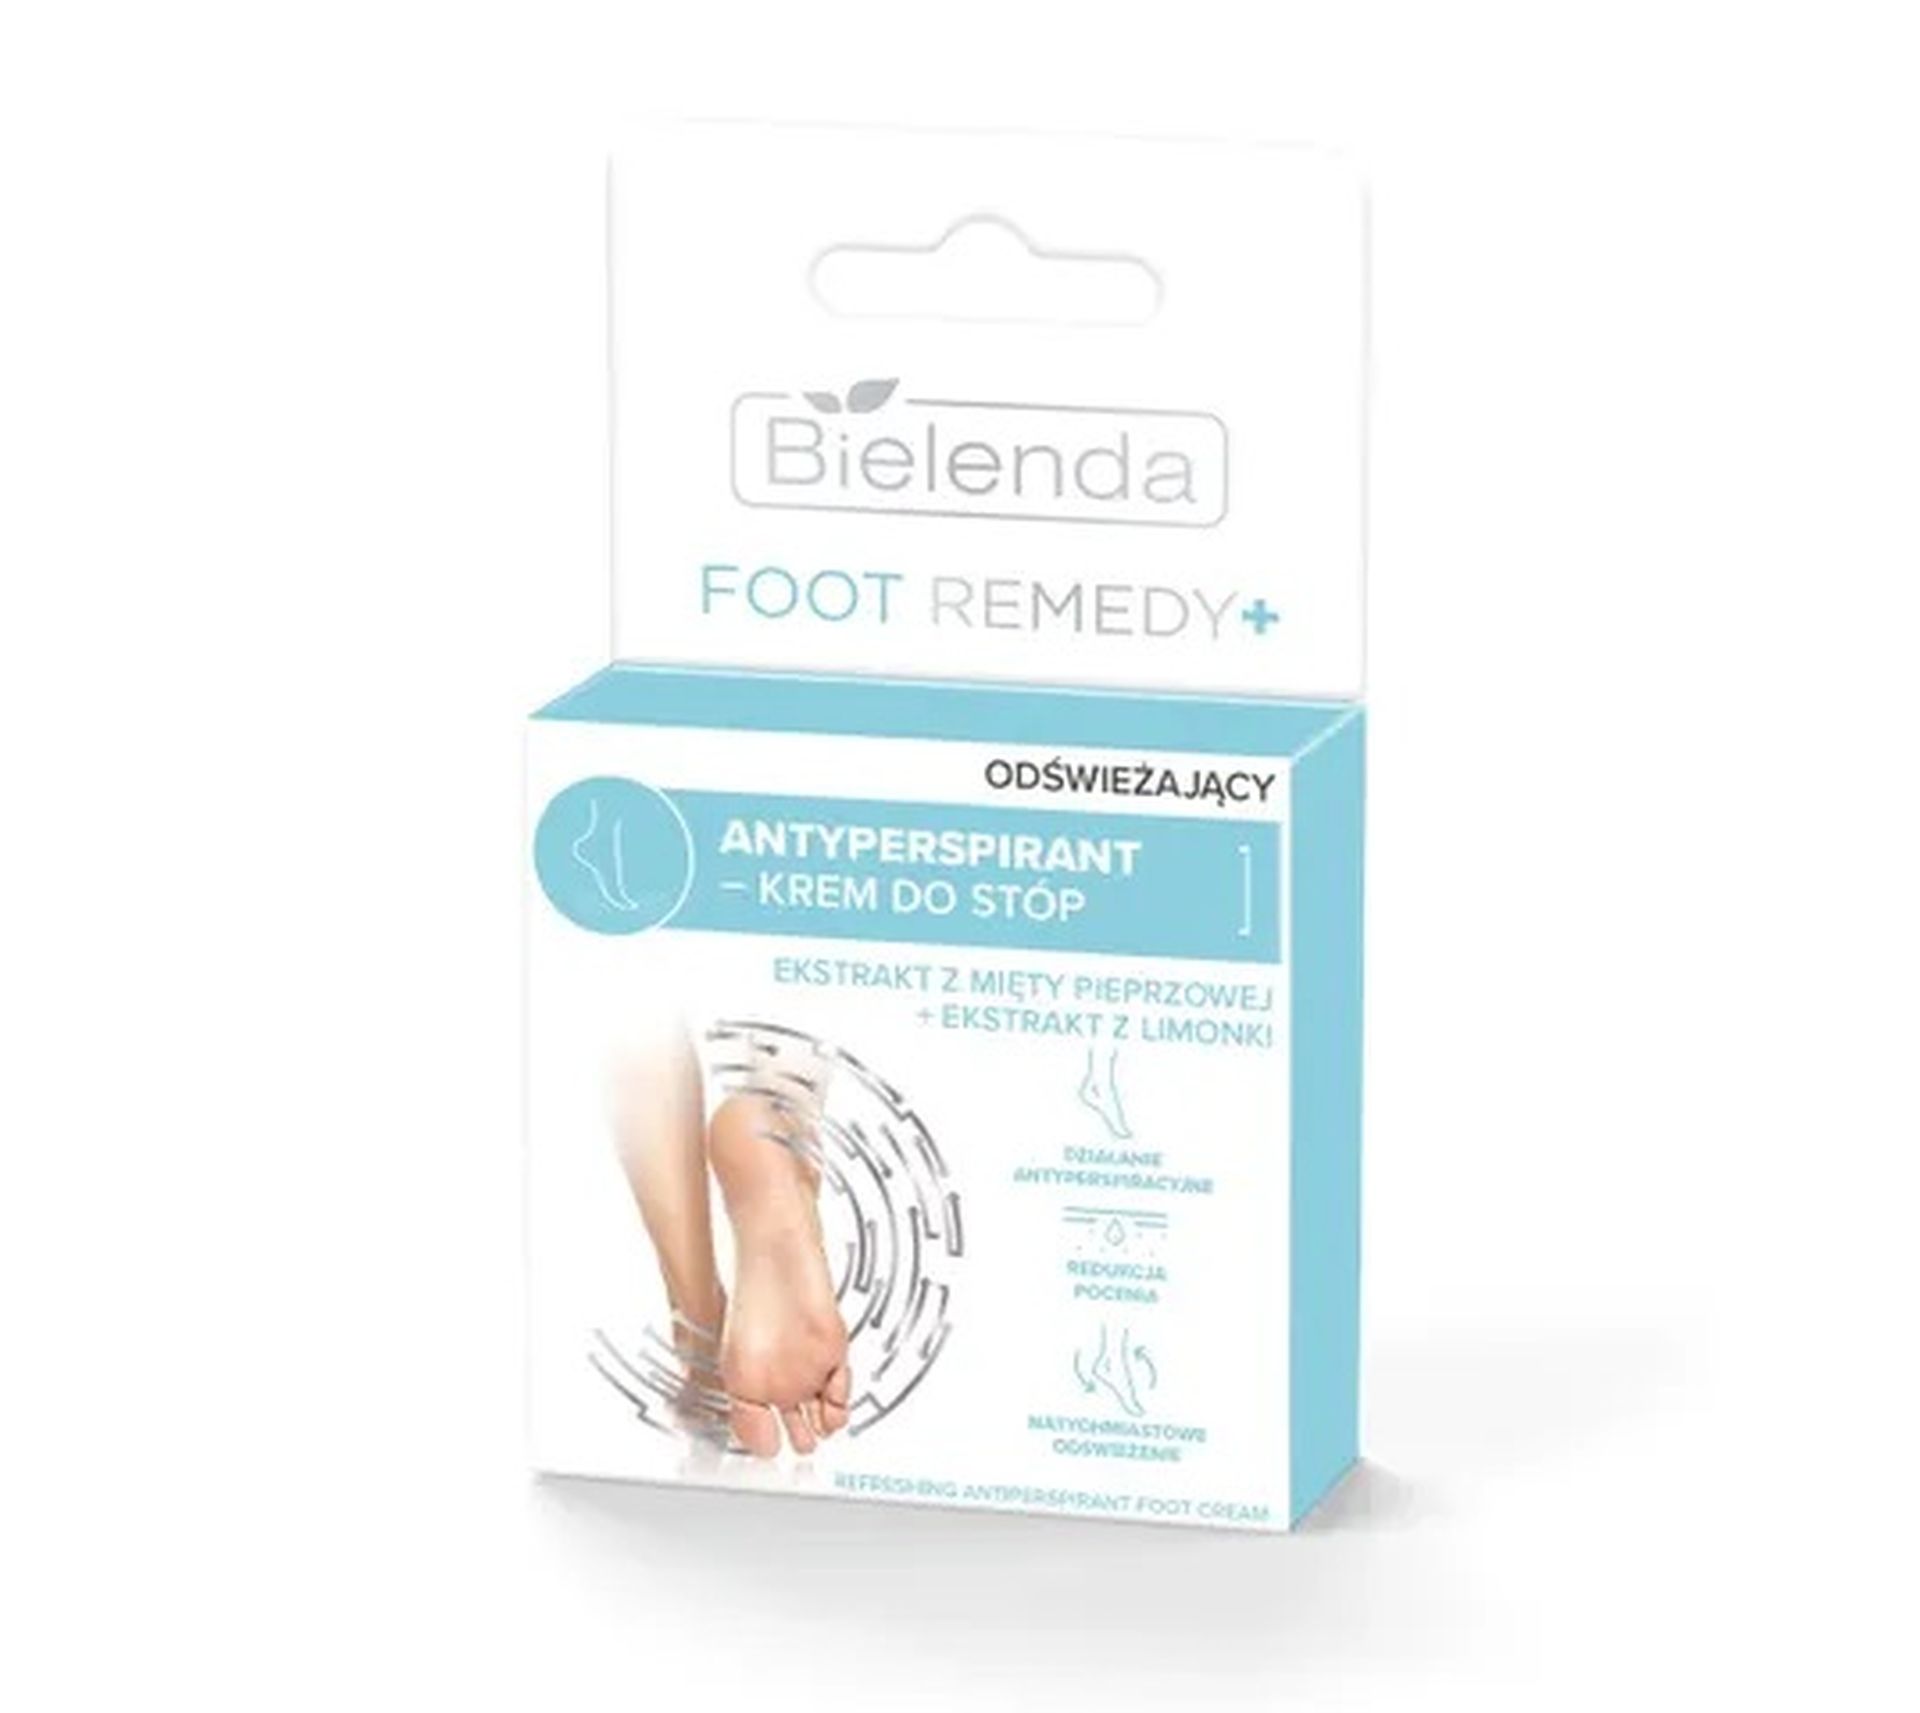 Bielenda Foot Remedy odświeżający antyperspirant-krem do stóp (50 ml)